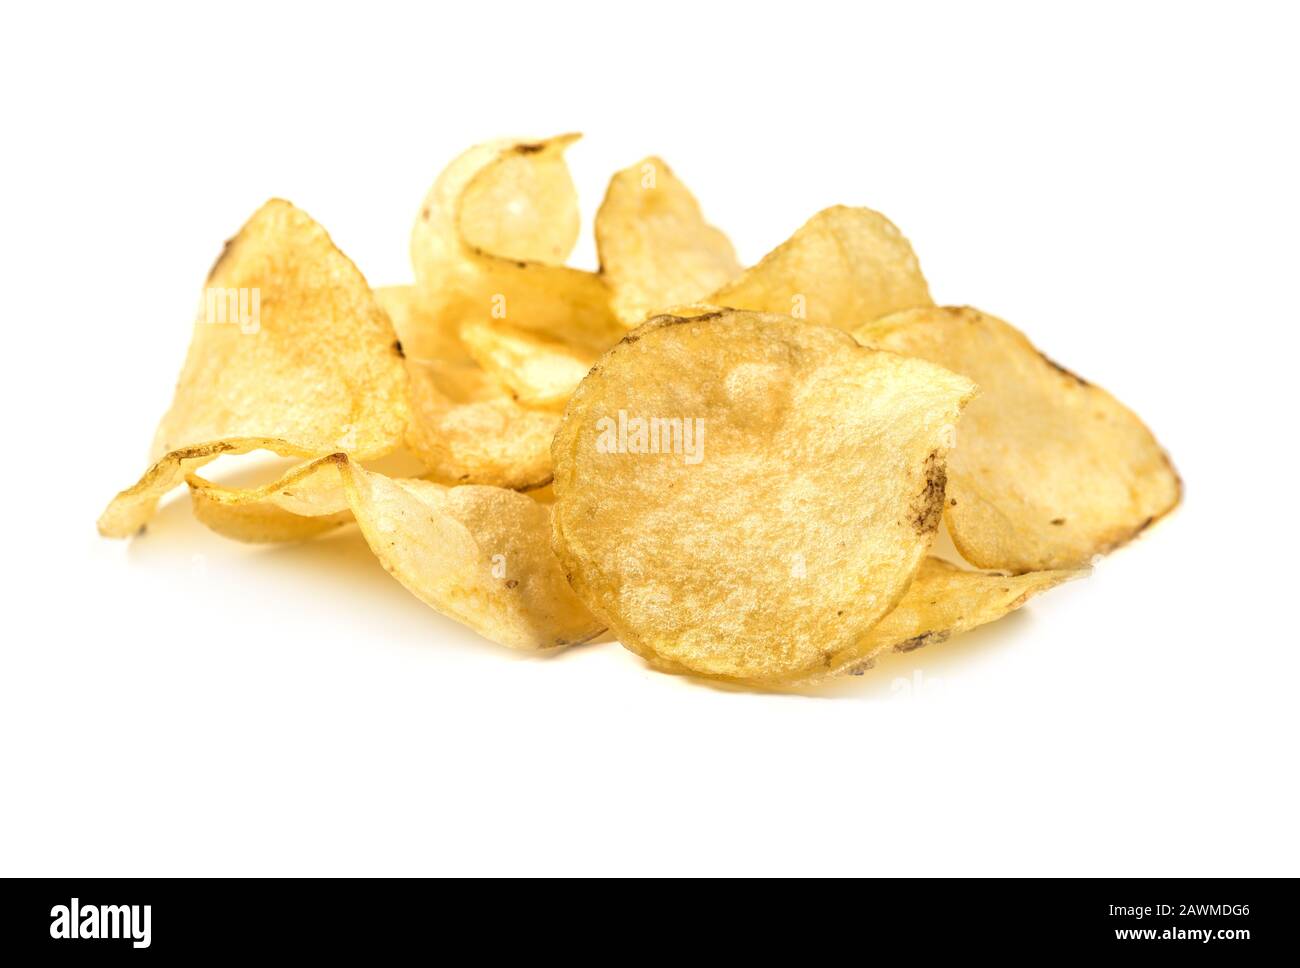 Las patatas fritas de cerca se ven aisladas sobre fondo blanco Foto de stock